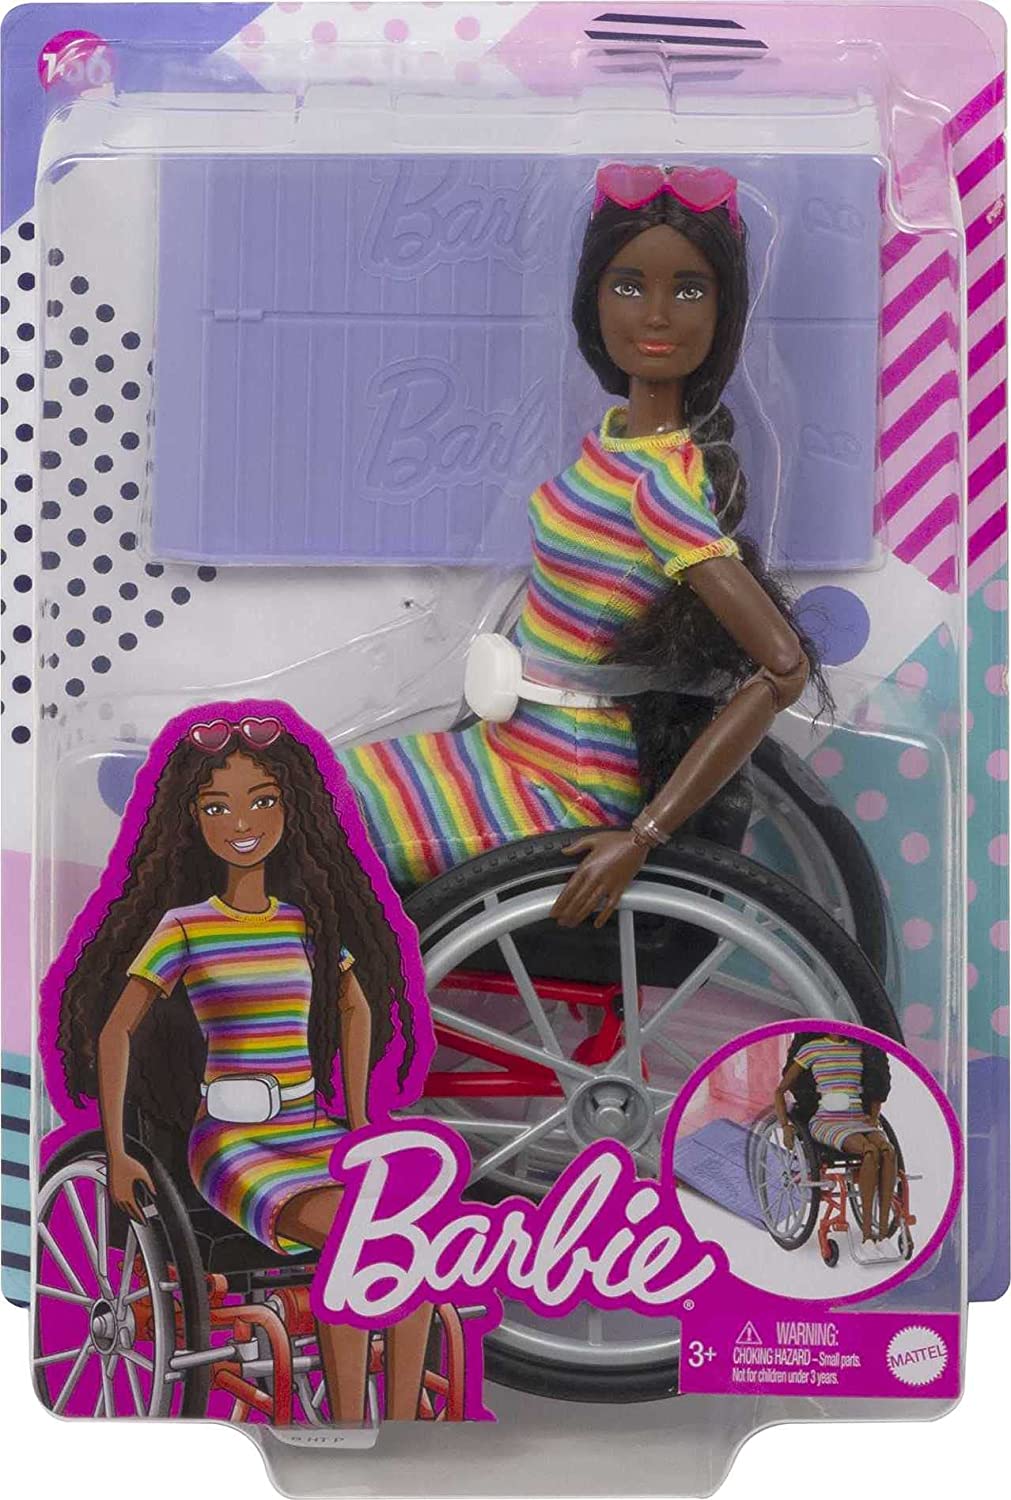 Muñeca Barbie Fashionistas n. ° 166 con silla de ruedas y cabello castaño rizado